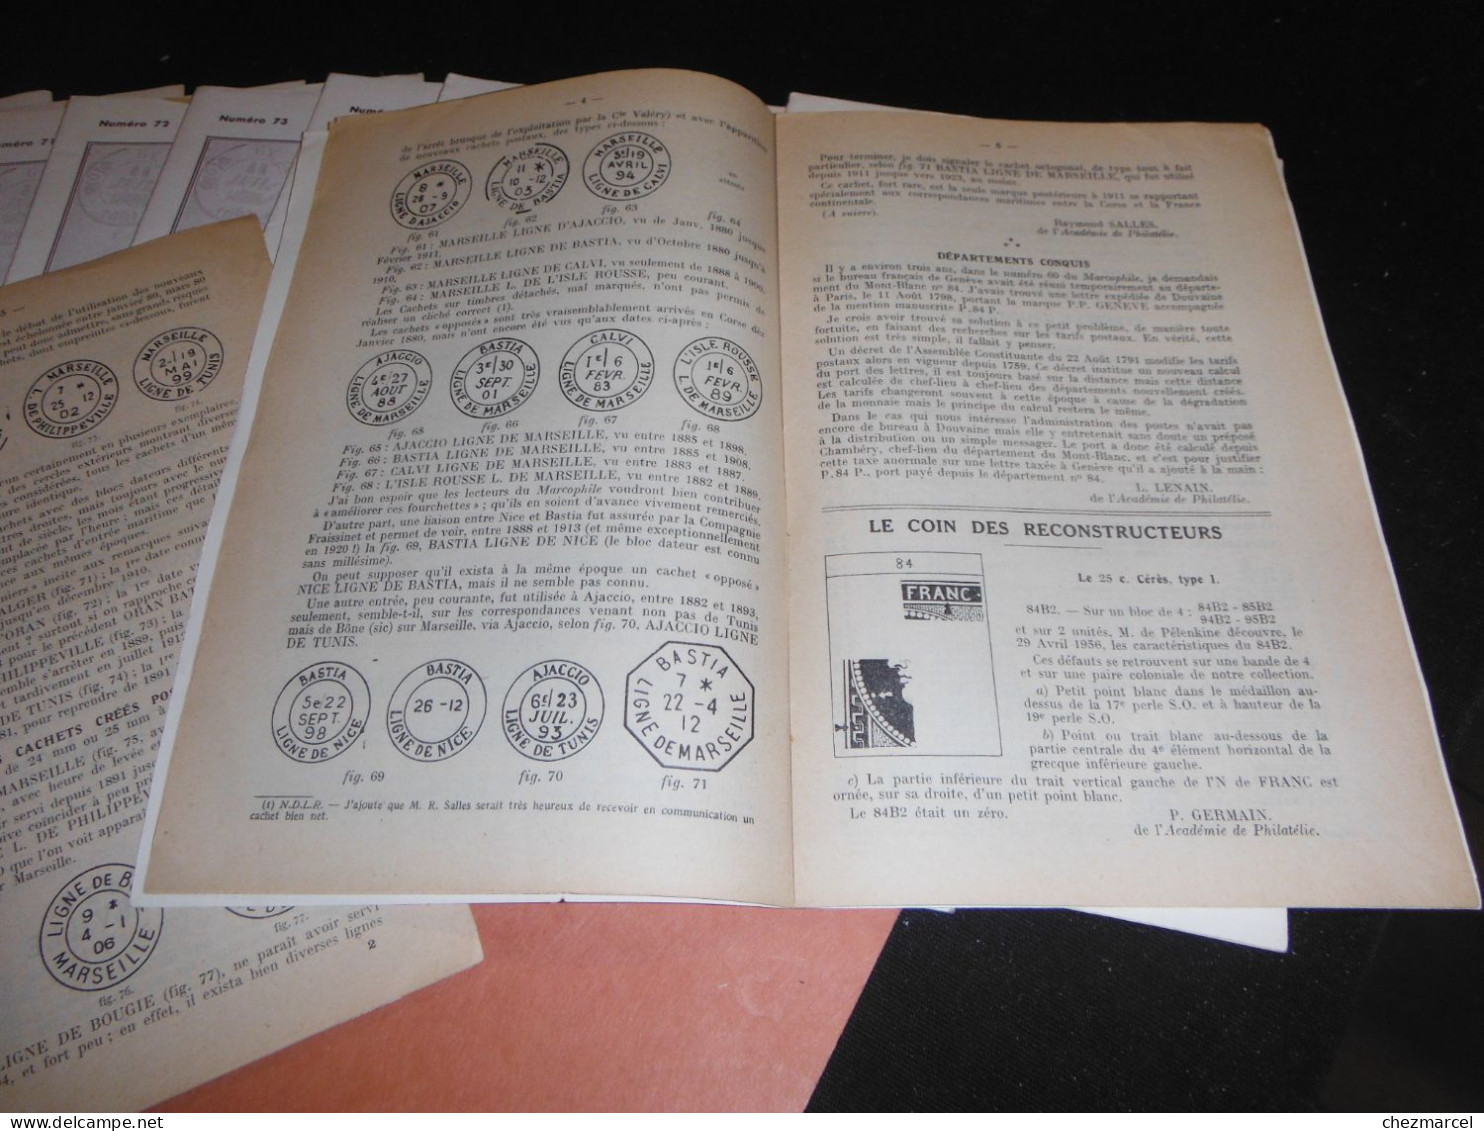 RARE!! le marcophile bulletin edite en 1947 jusqu en 1960 edite par E.H de BEAUFOND 52 numeros